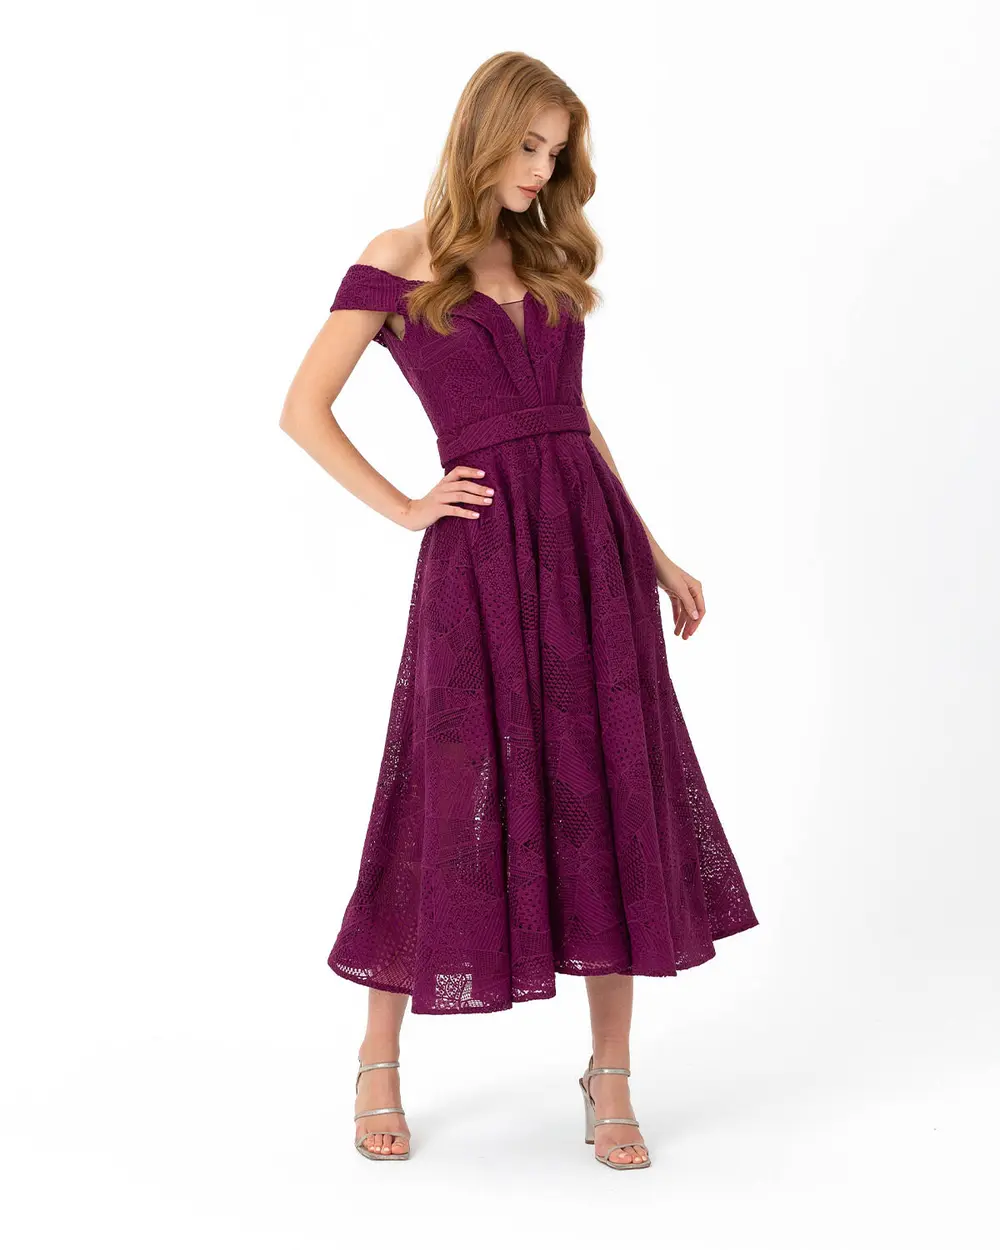  A Cut Open Shoulder Lace Evening Dress